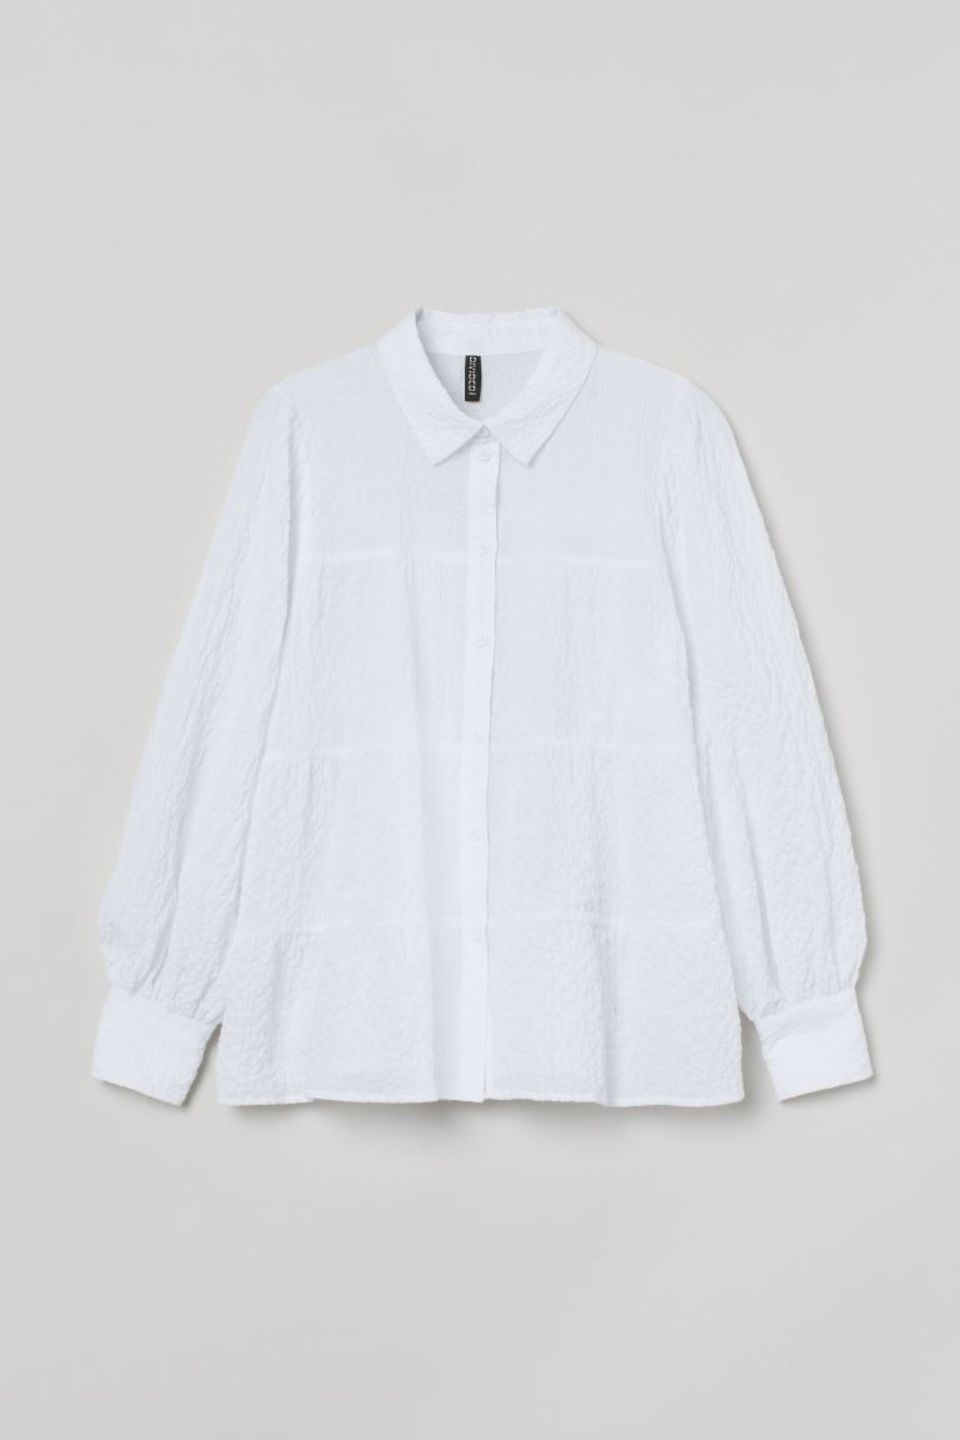 Weiß macht sich hervorragend in jeder Frühlingsgarderobe. Vor allem, wenn sie coole Ballonärmel hat. Crêpe-Bluse von H&M, etwa 25 Euro.